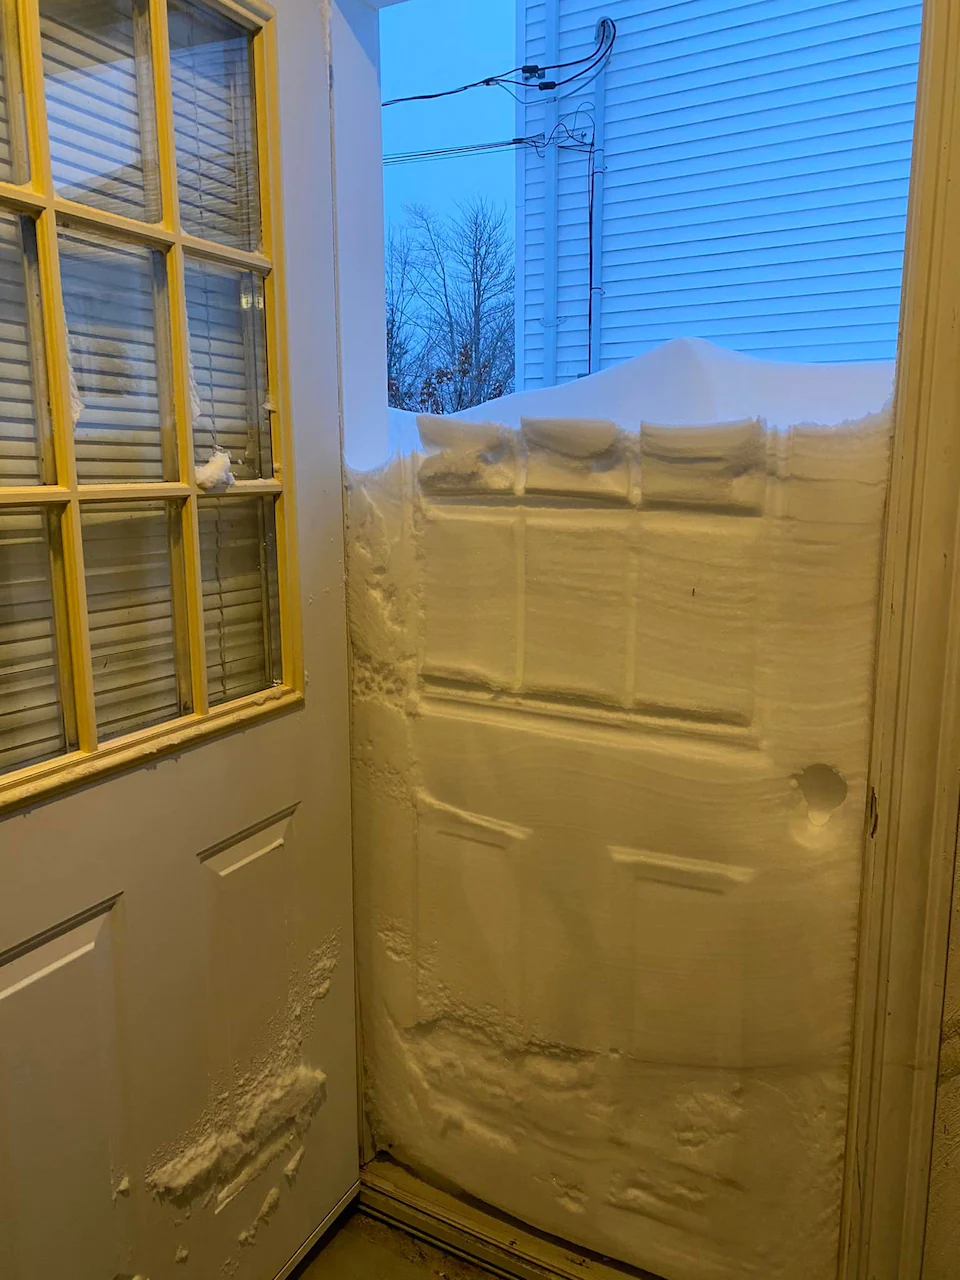 Une porte ouverte laisse voir un demi-mur de neige qui bloque l'accès et empêche de sortir d'une maison.